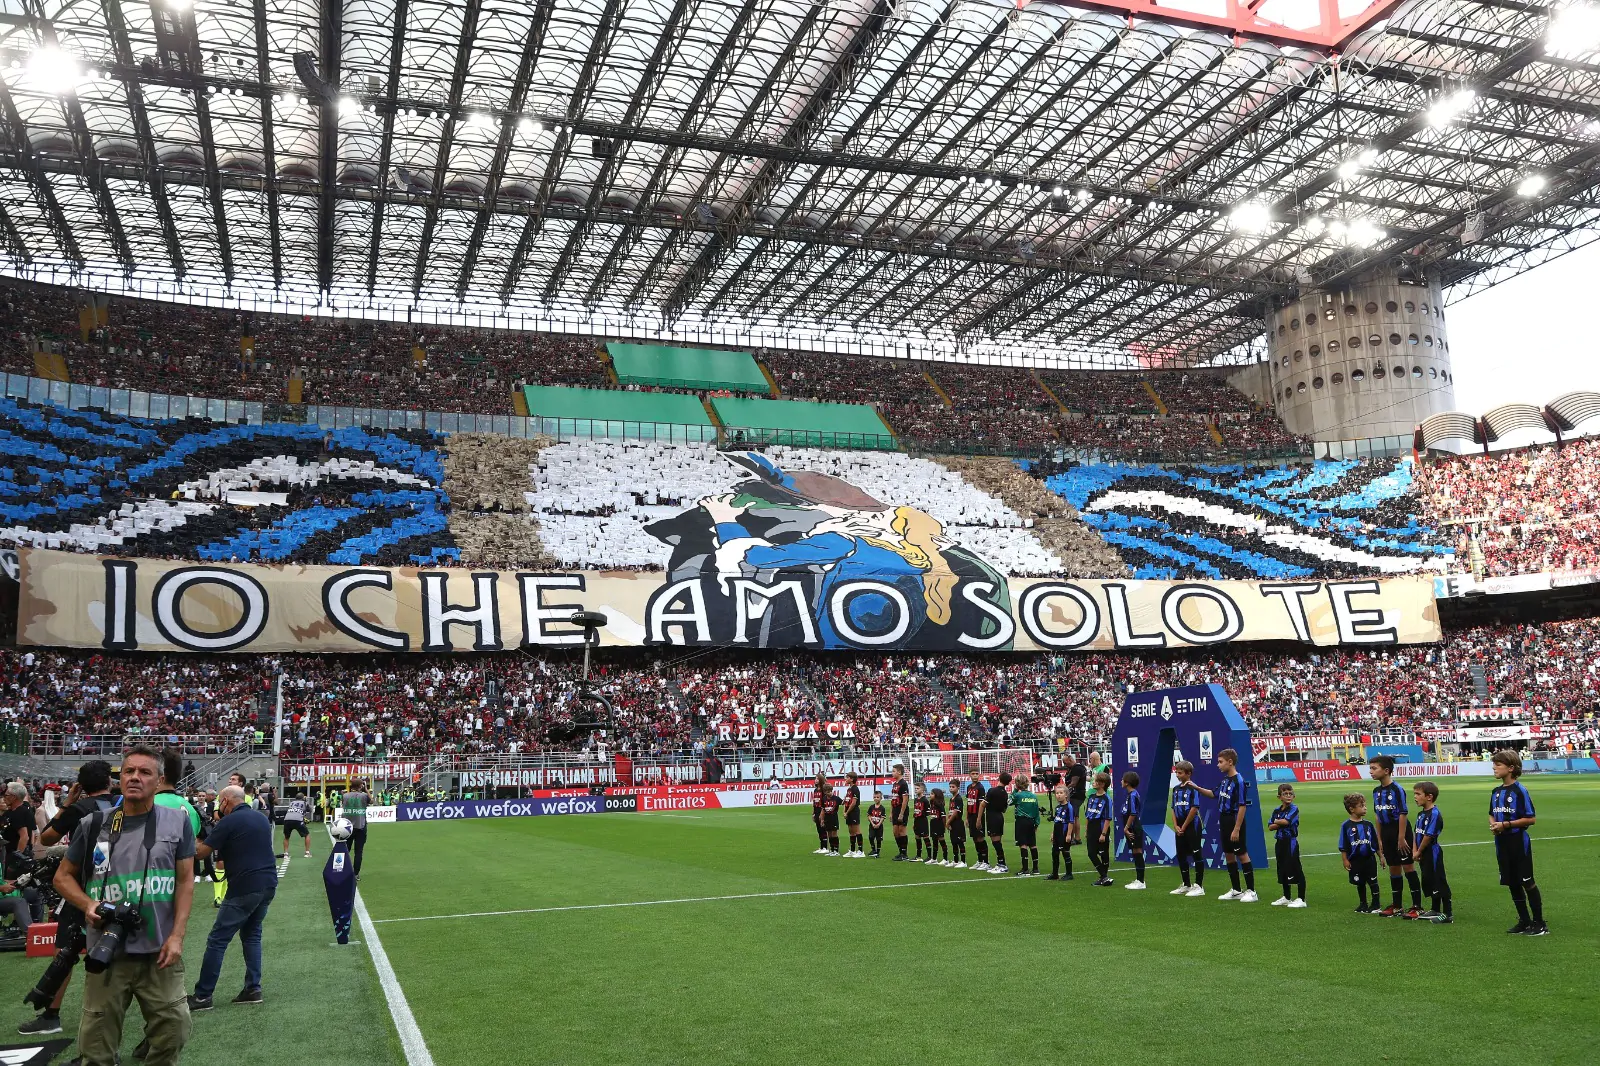 Cori antisemiti contro i tifosi del Milan: c’è la risposta del club rossonero (VIDEO)